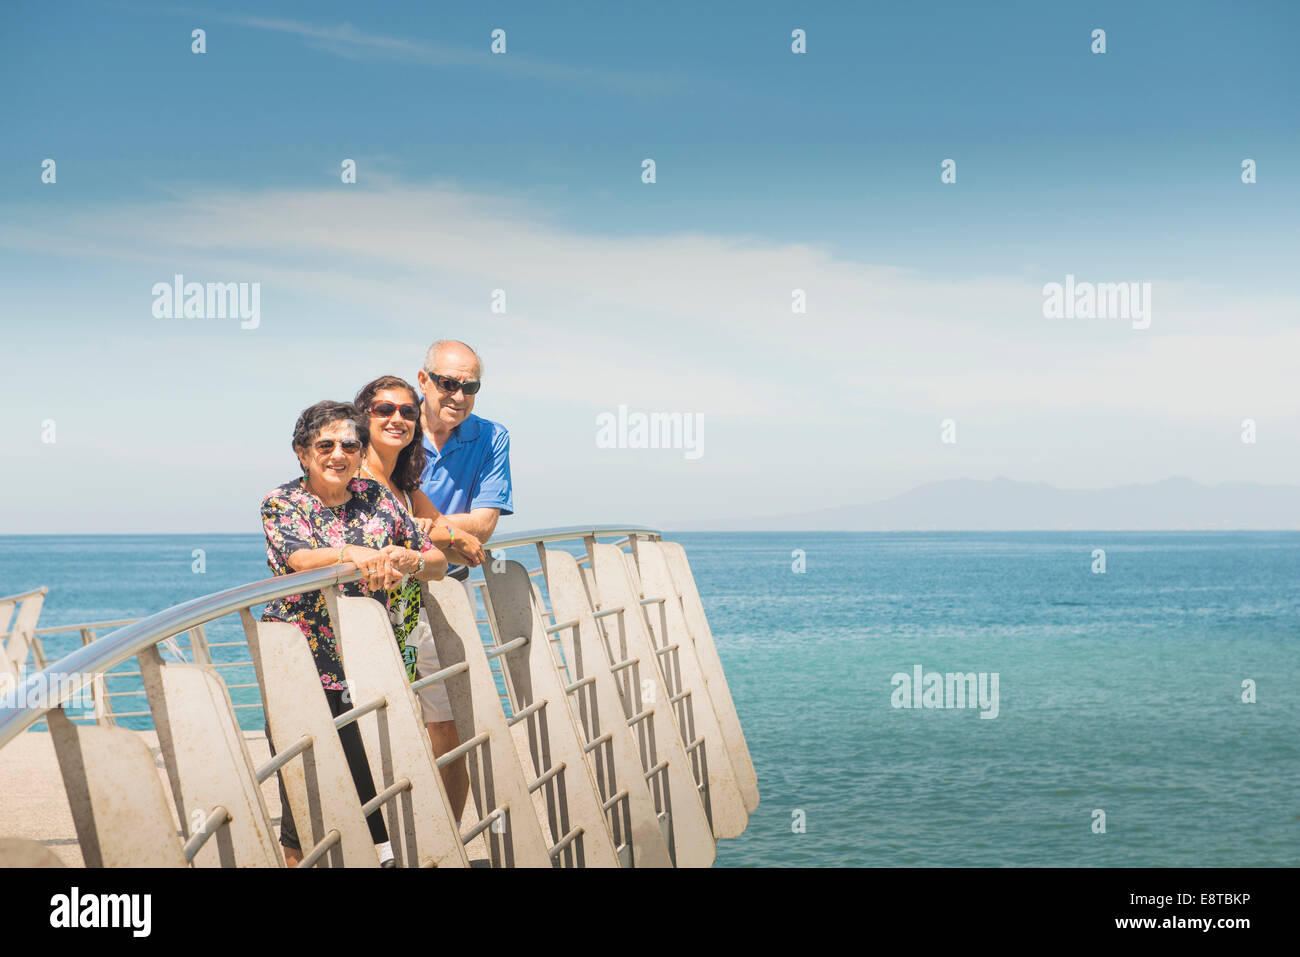 Familie lächelnd zusammen an Uferpromenade Reling Stockfoto